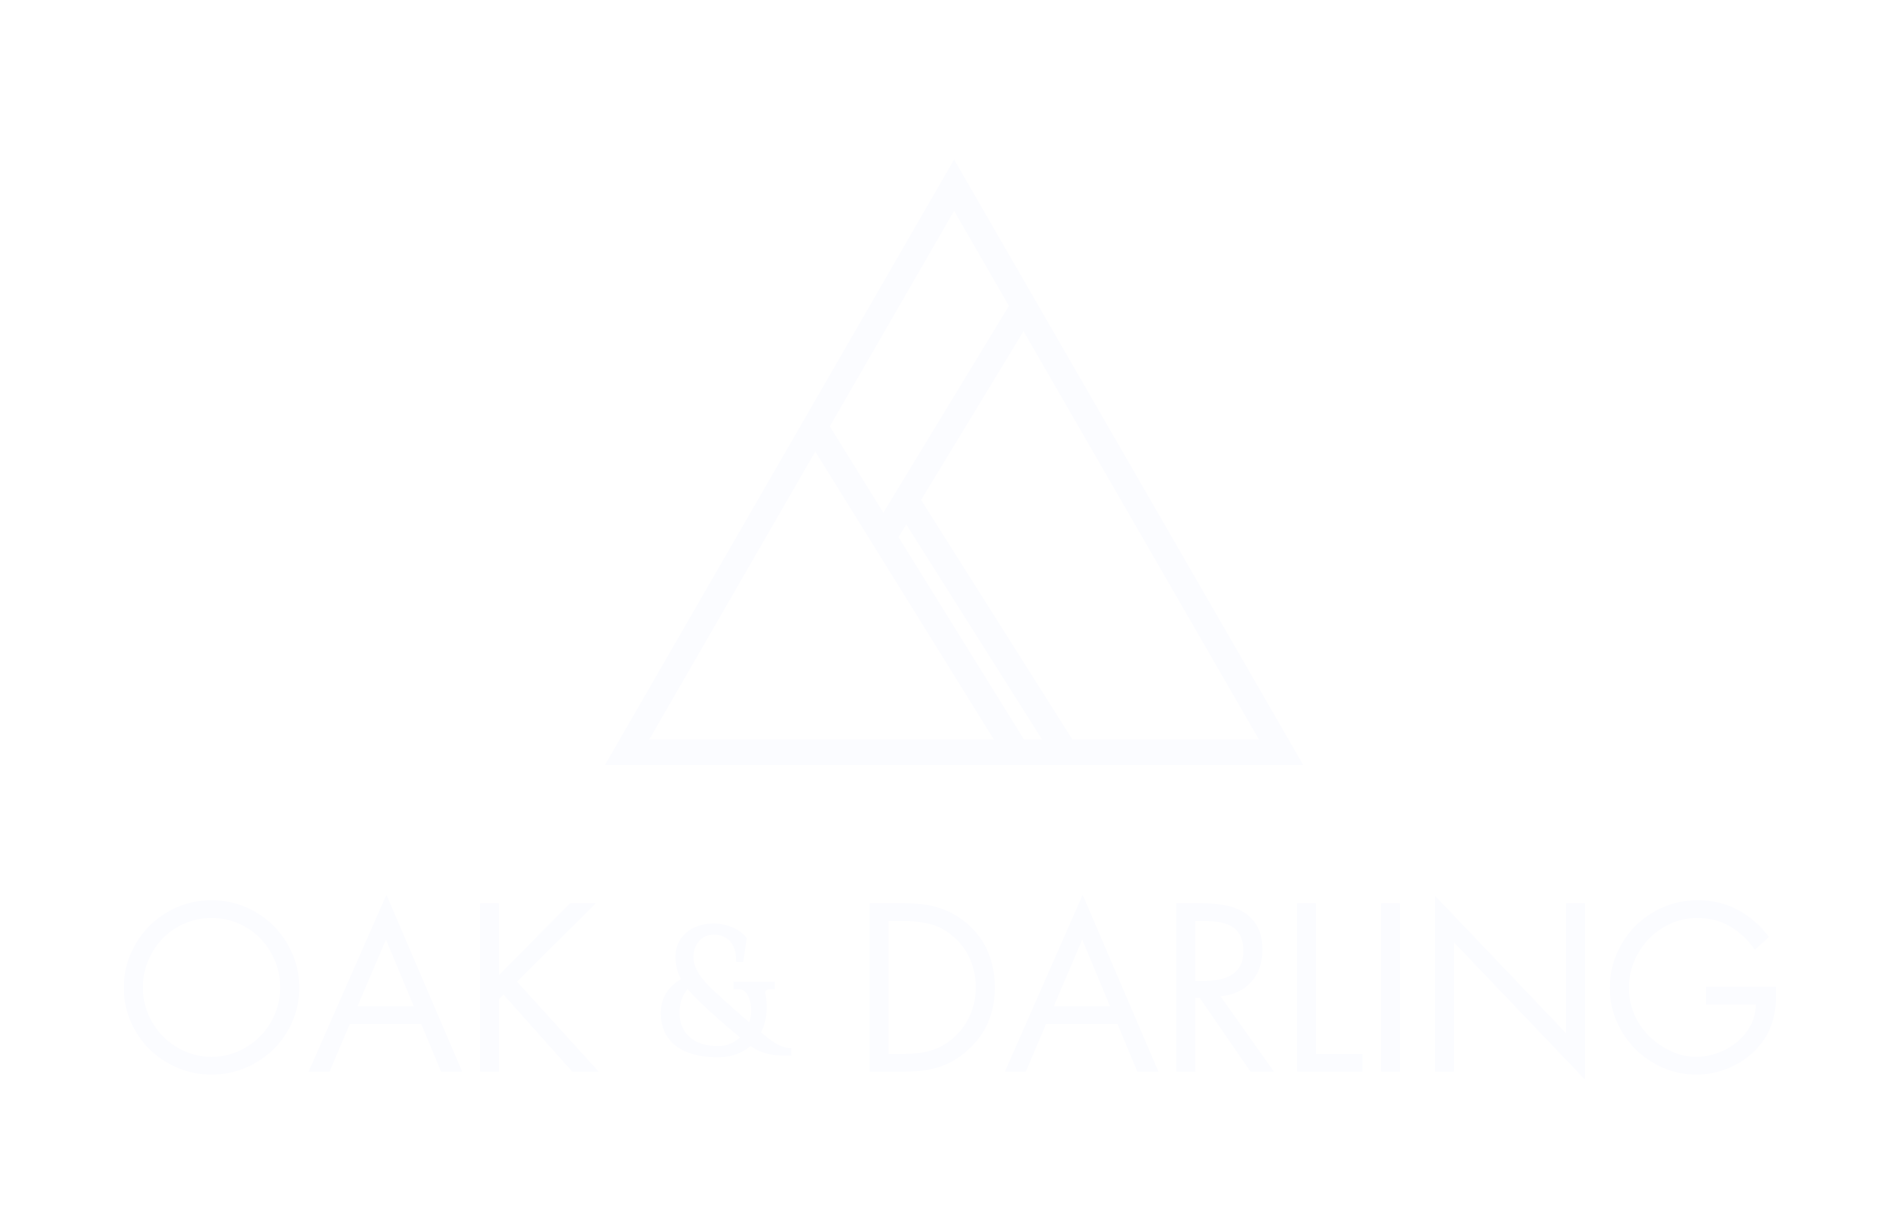 Oak & Darling